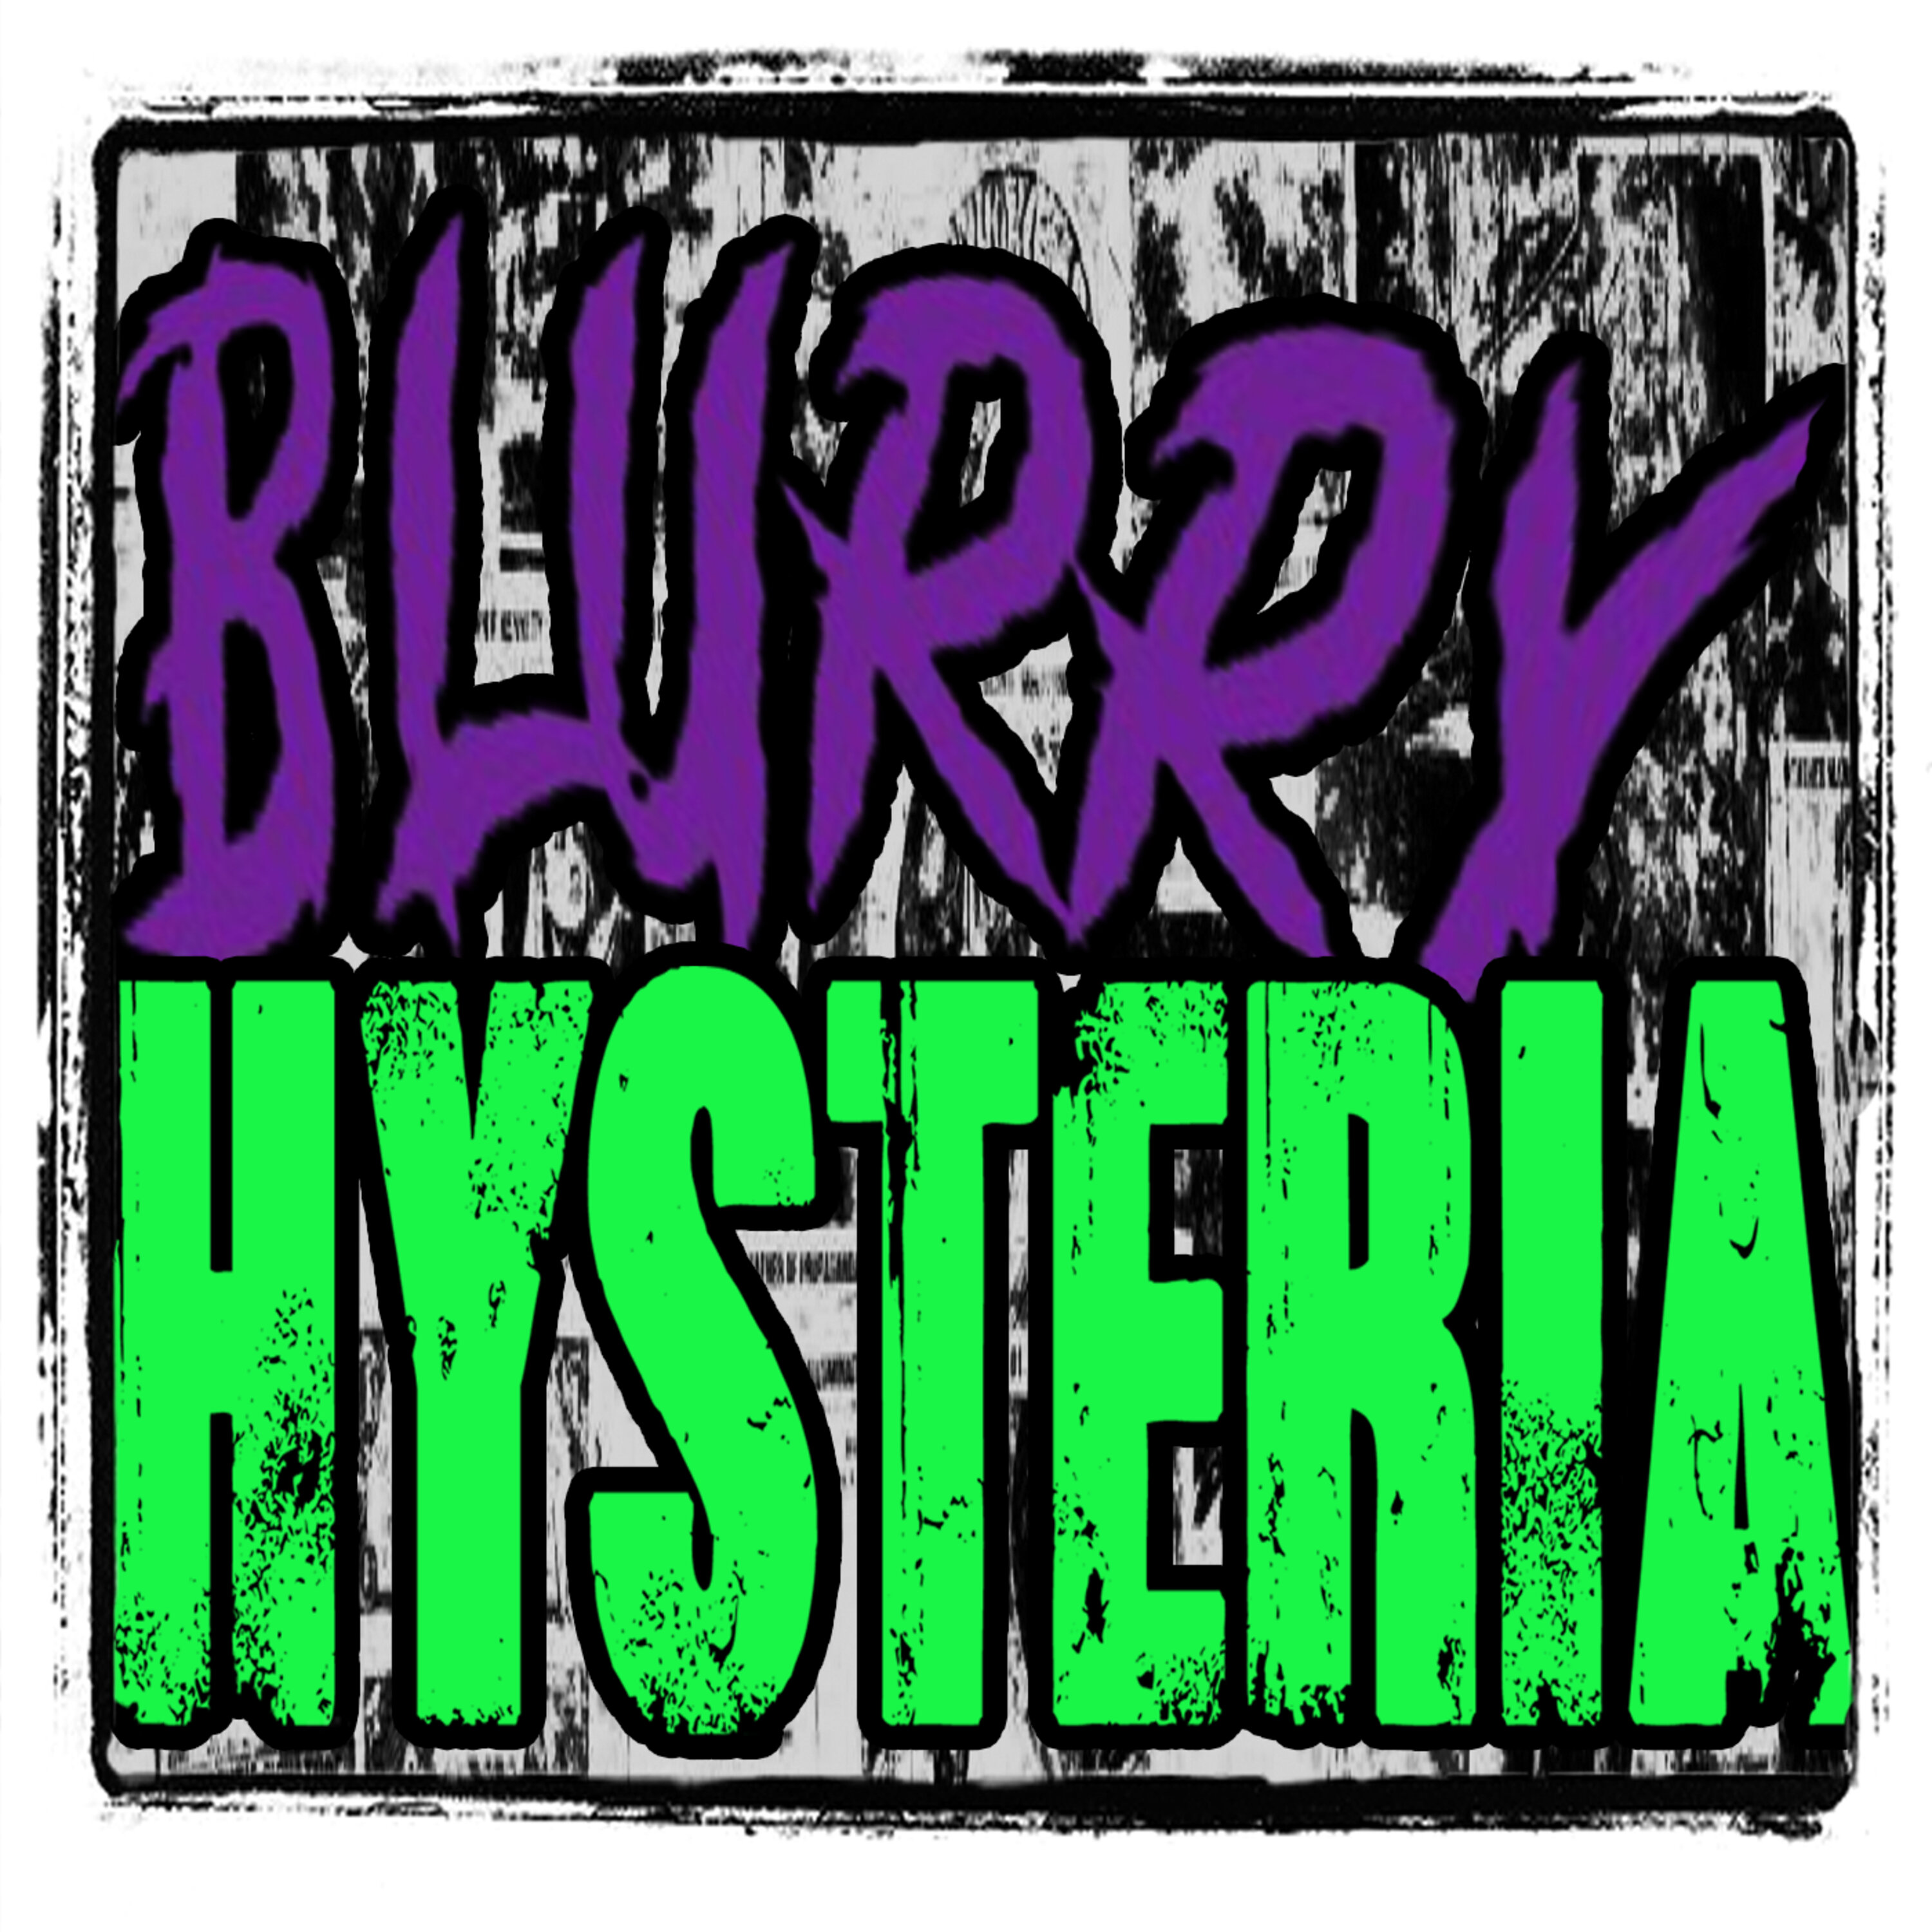 Blurry Hysteria 13: Bigfoot Summoning Beetlejuice | BONUS Image